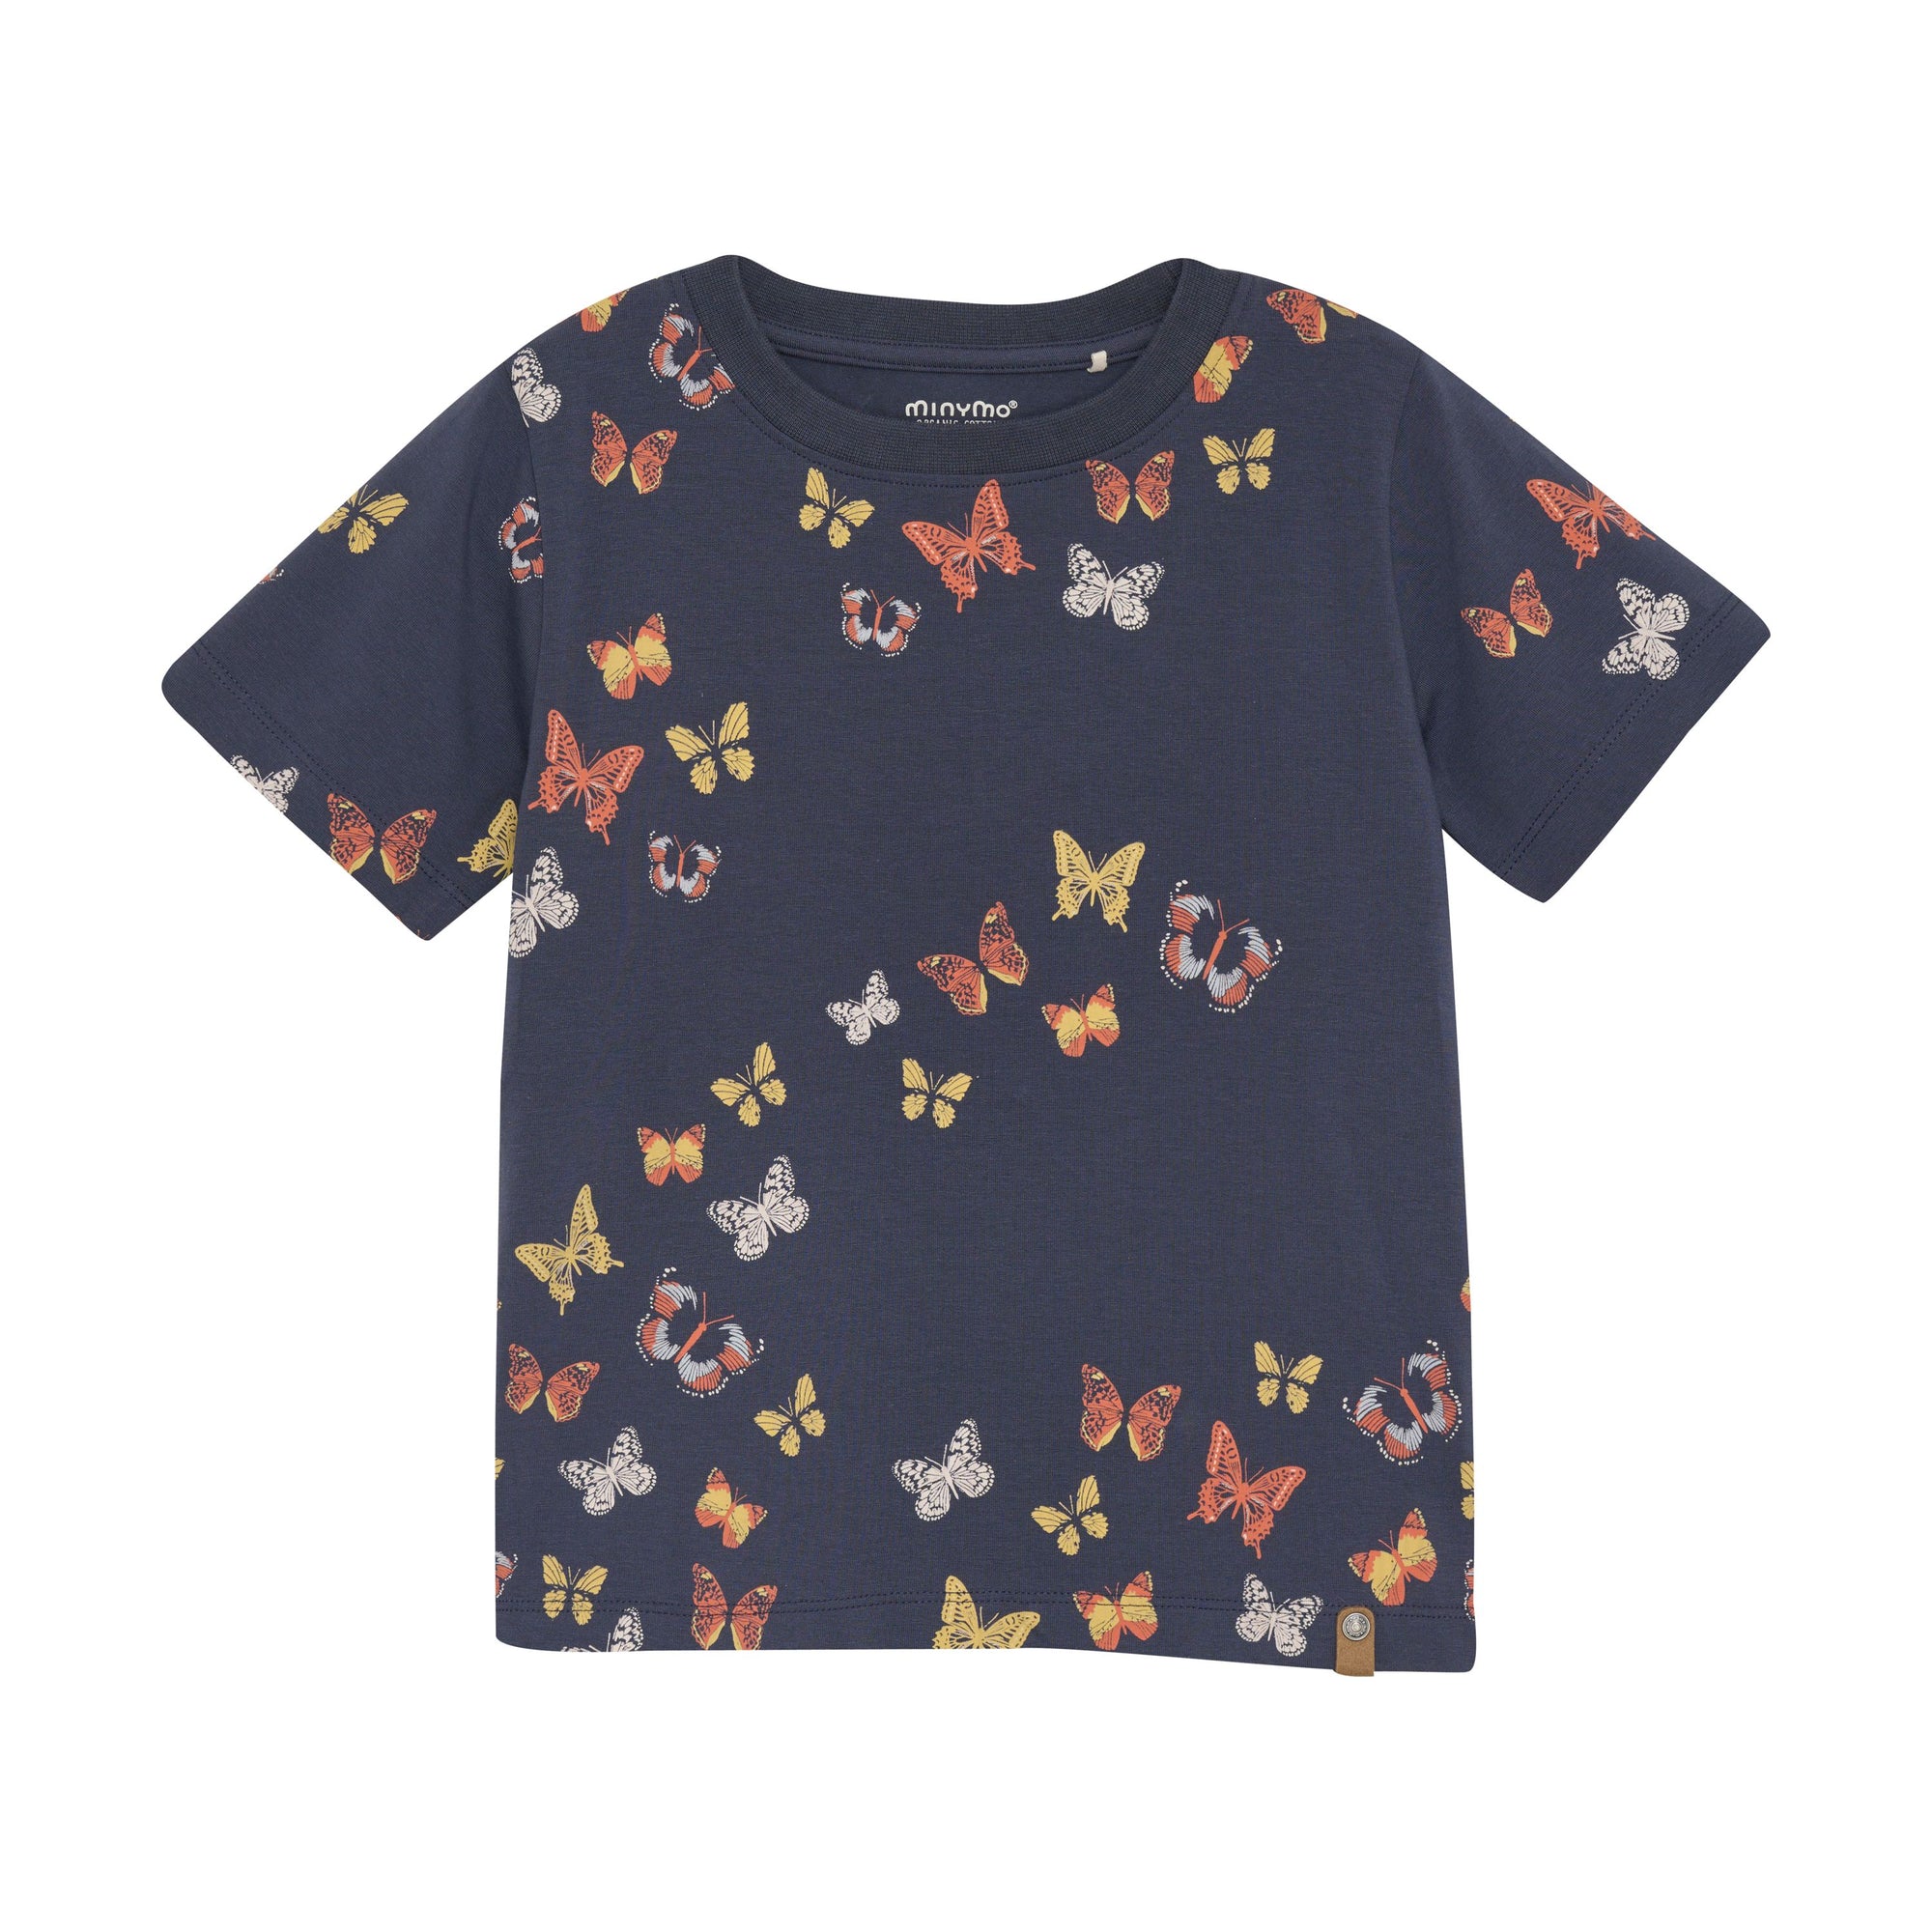 Minymo Boys Short Sleeve Tee  133485-7840  Butterfly Print